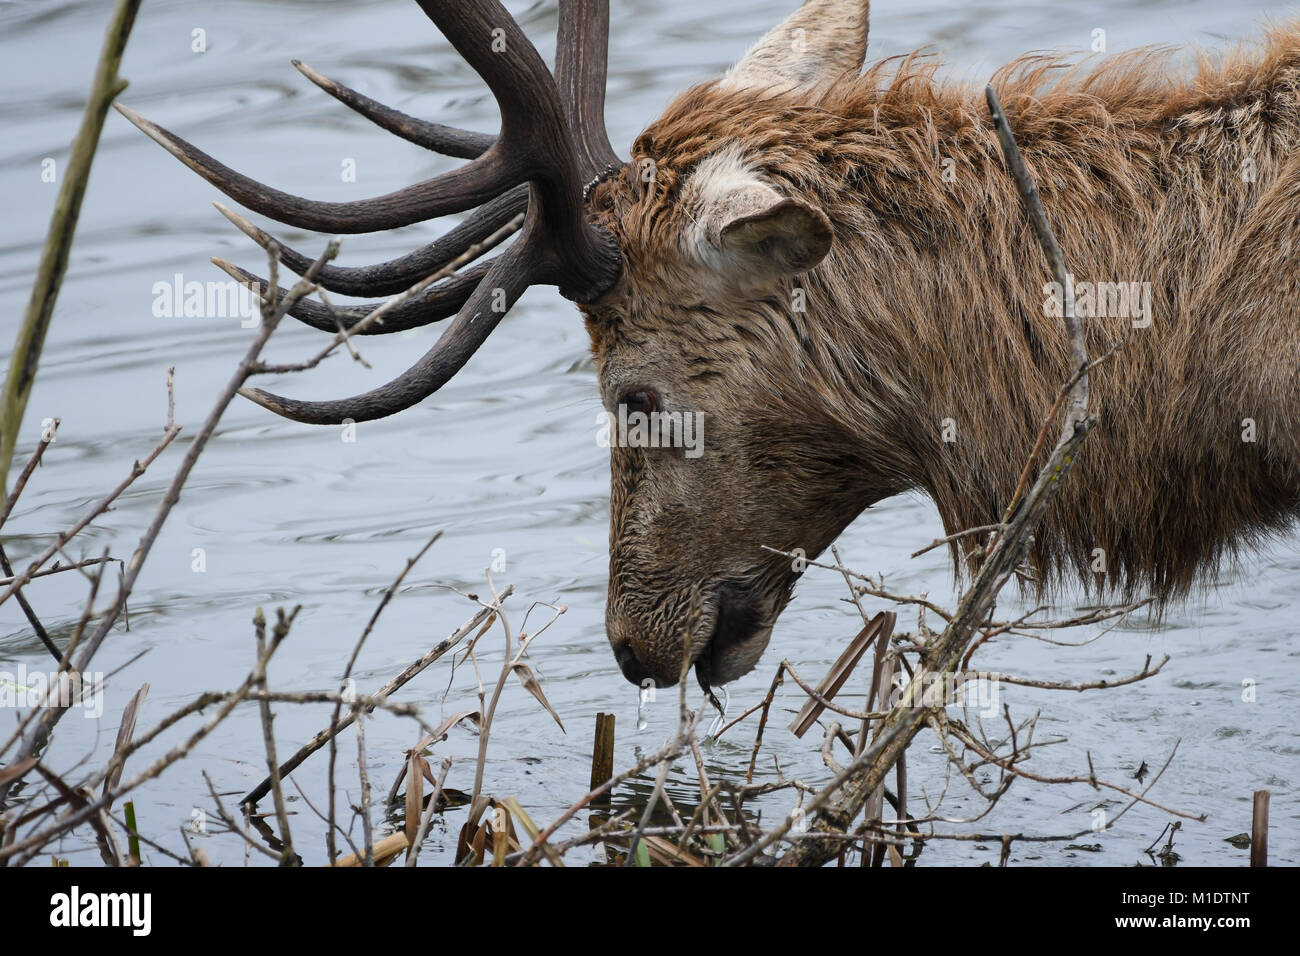 closeup of deer among reeds Stock Photo